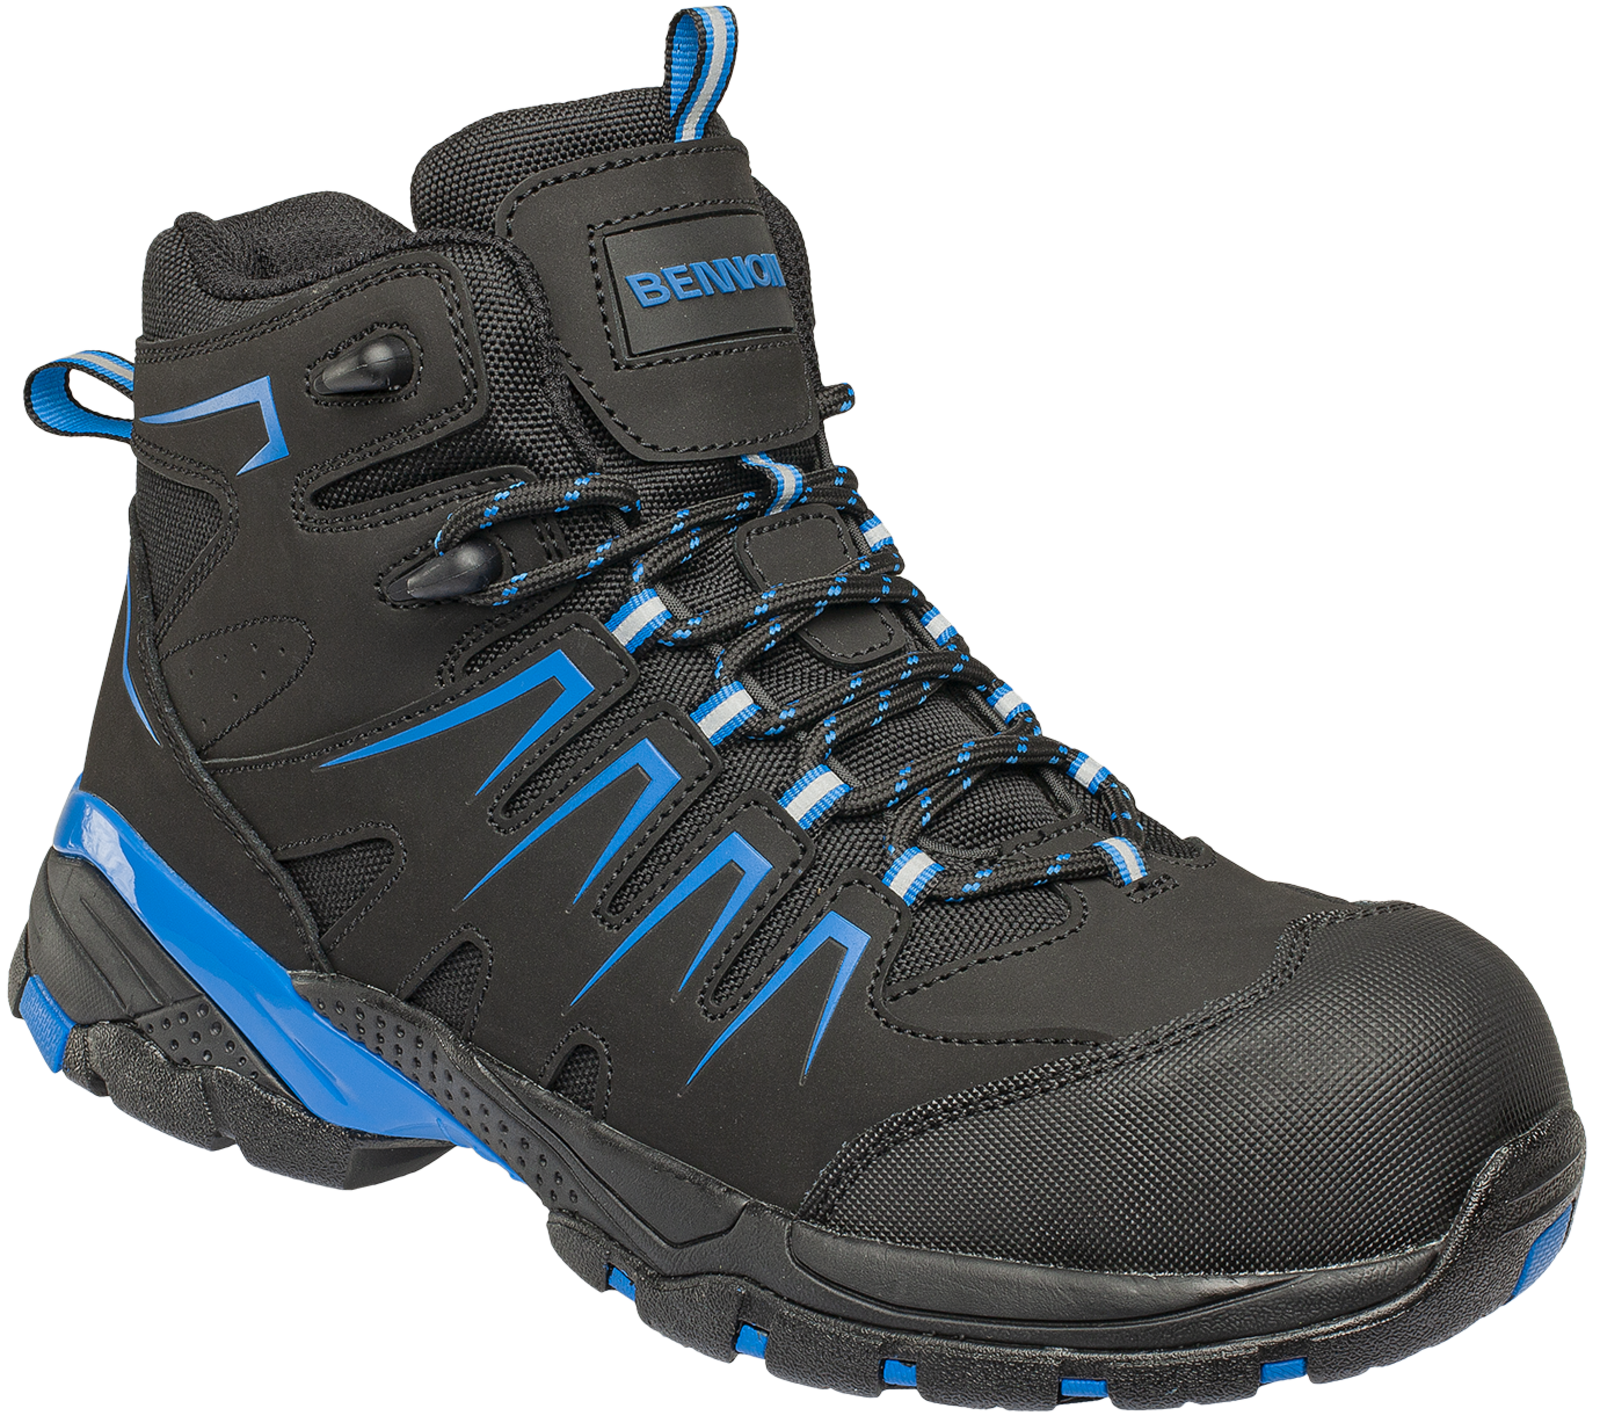 Bezpečnostná členková obuv Bennon Orlando XTR S3 NM High - veľkosť: 47, farba: čierna/modrá